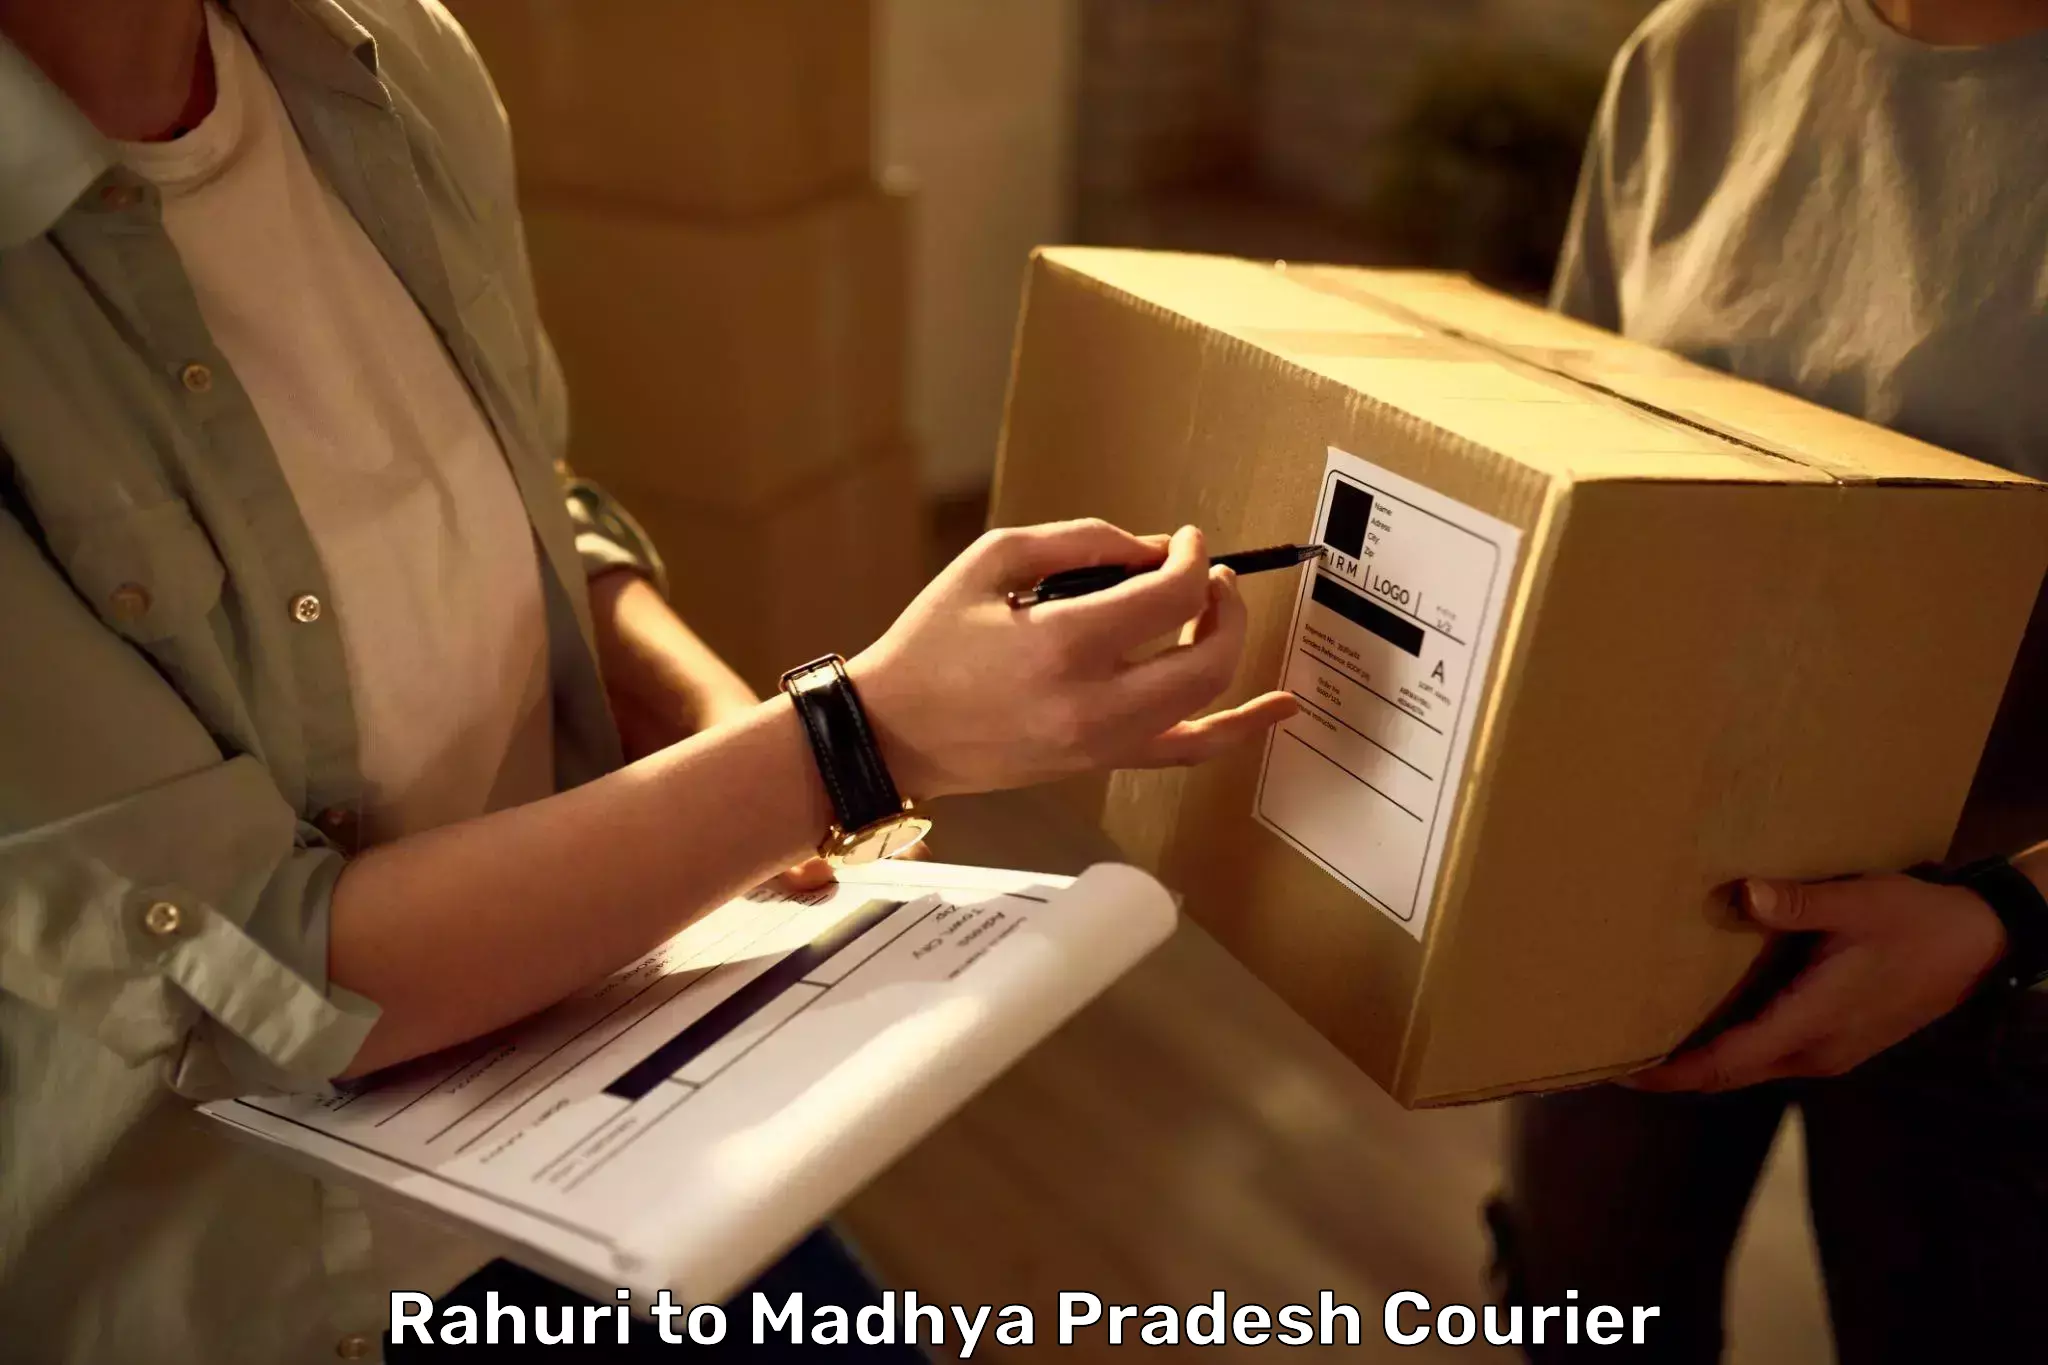 Luggage shipping planner Rahuri to Pawai